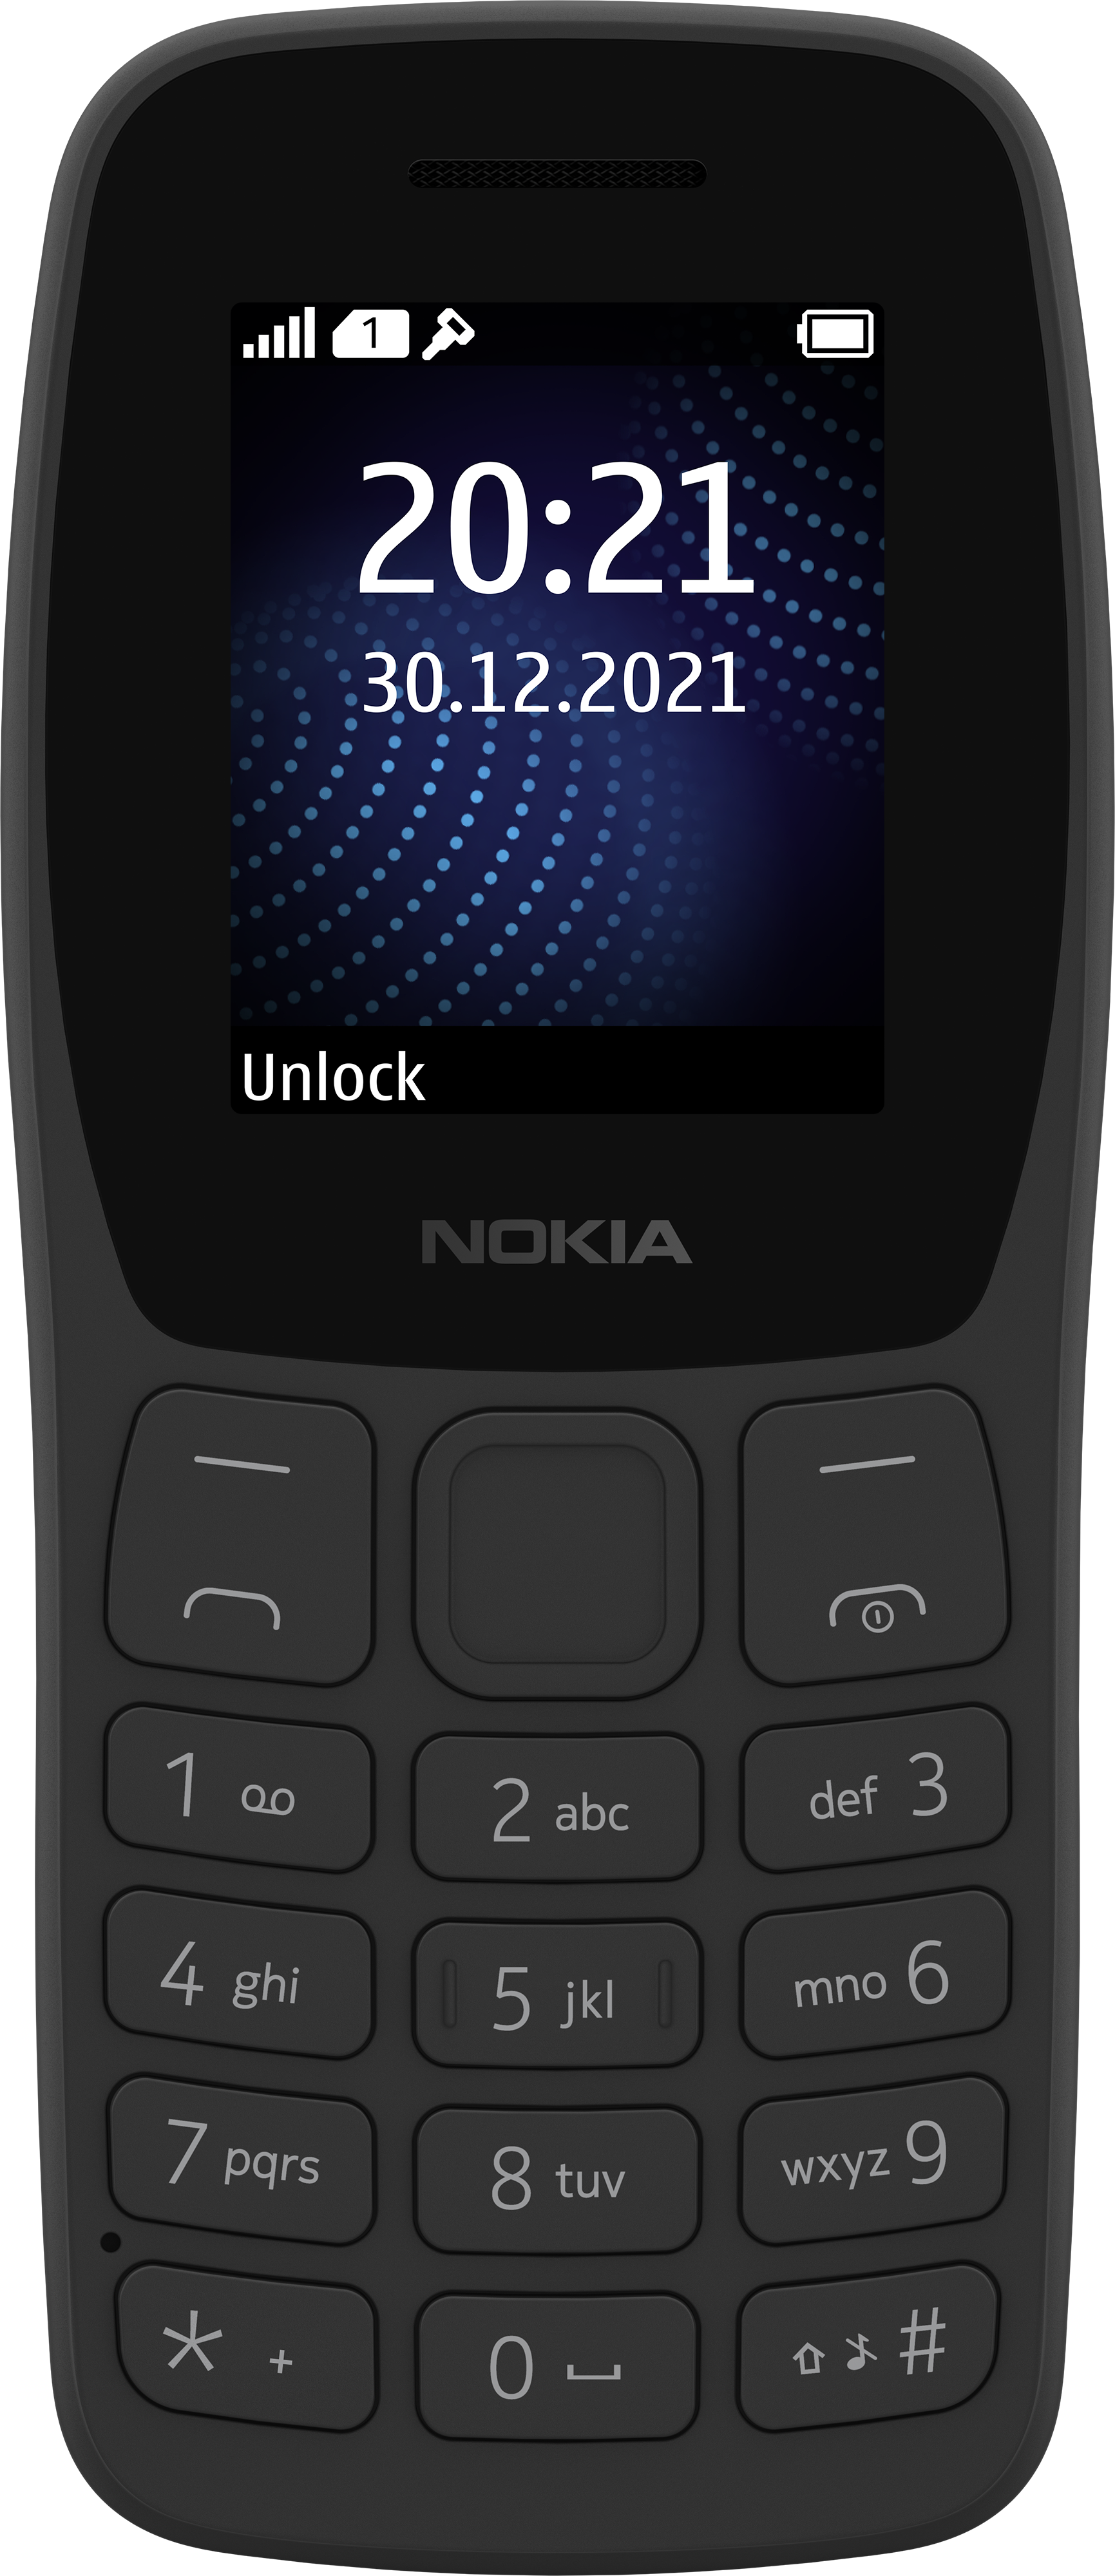 Nokia smartphones with latest Android 12 OS upgrades: Được cập nhật với bản Android 12 mới nhất, các smartphone từ Nokia sẽ mang đến cho bạn nhiều tính năng thú vị và trải nghiệm tuyệt vời. Với thiết kế đẹp mắt và chất lượng tốt, Nokia là một trong những thương hiệu smartphone được nhiều người tin tưởng trên thị trường.